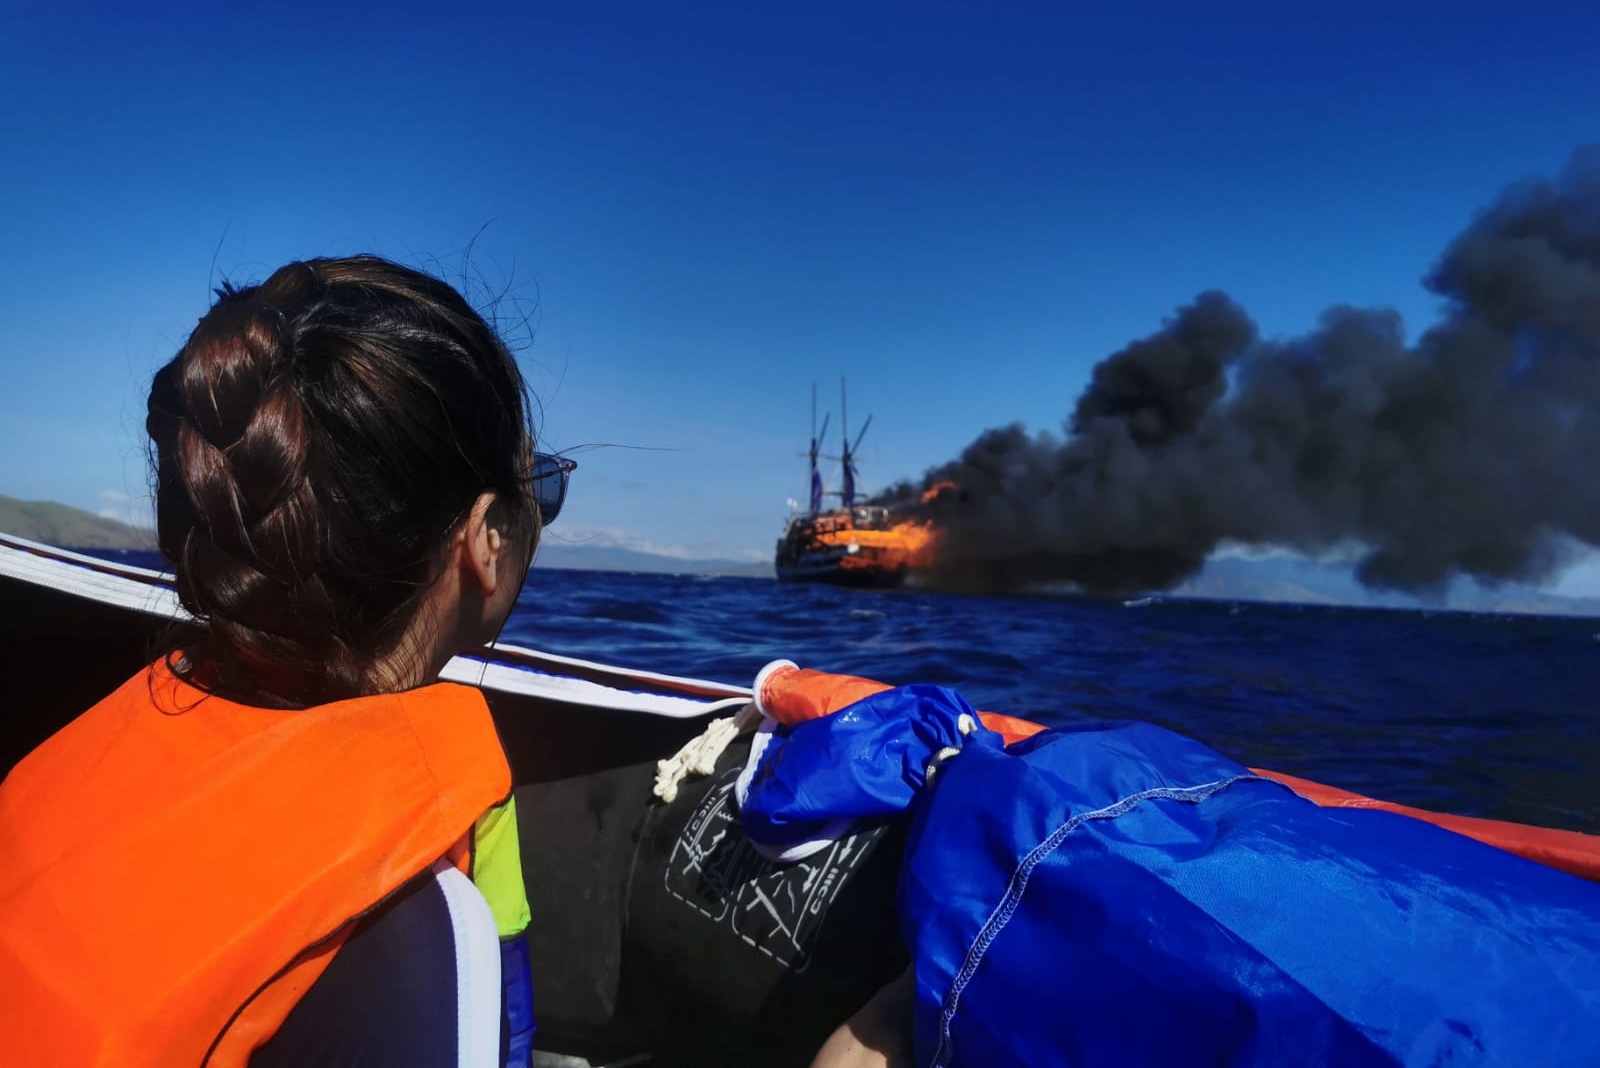 L'évacuation flamboyante d'un bateau de plongée est chaotique, selon des plongeurs britanniques